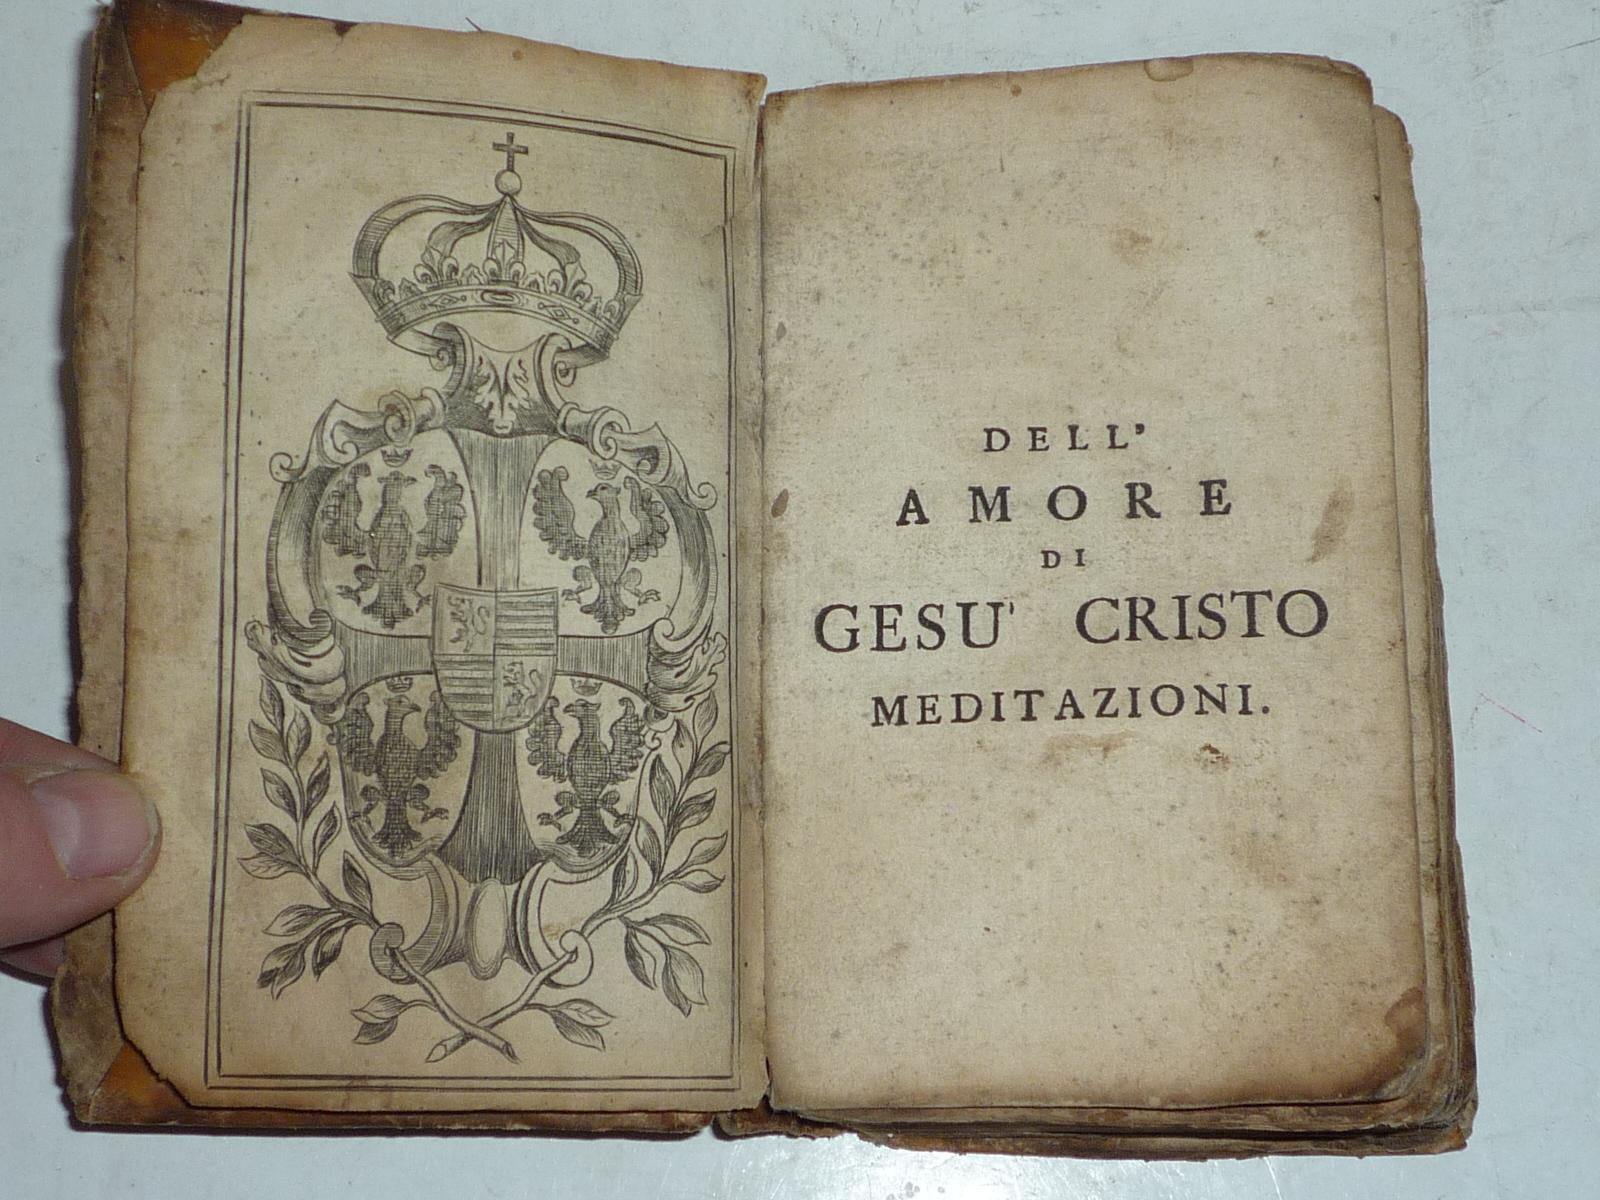 KNIHA DELL A MORE GESU CRISTO MEDITAZIONI asi veľmi stará - Knihy